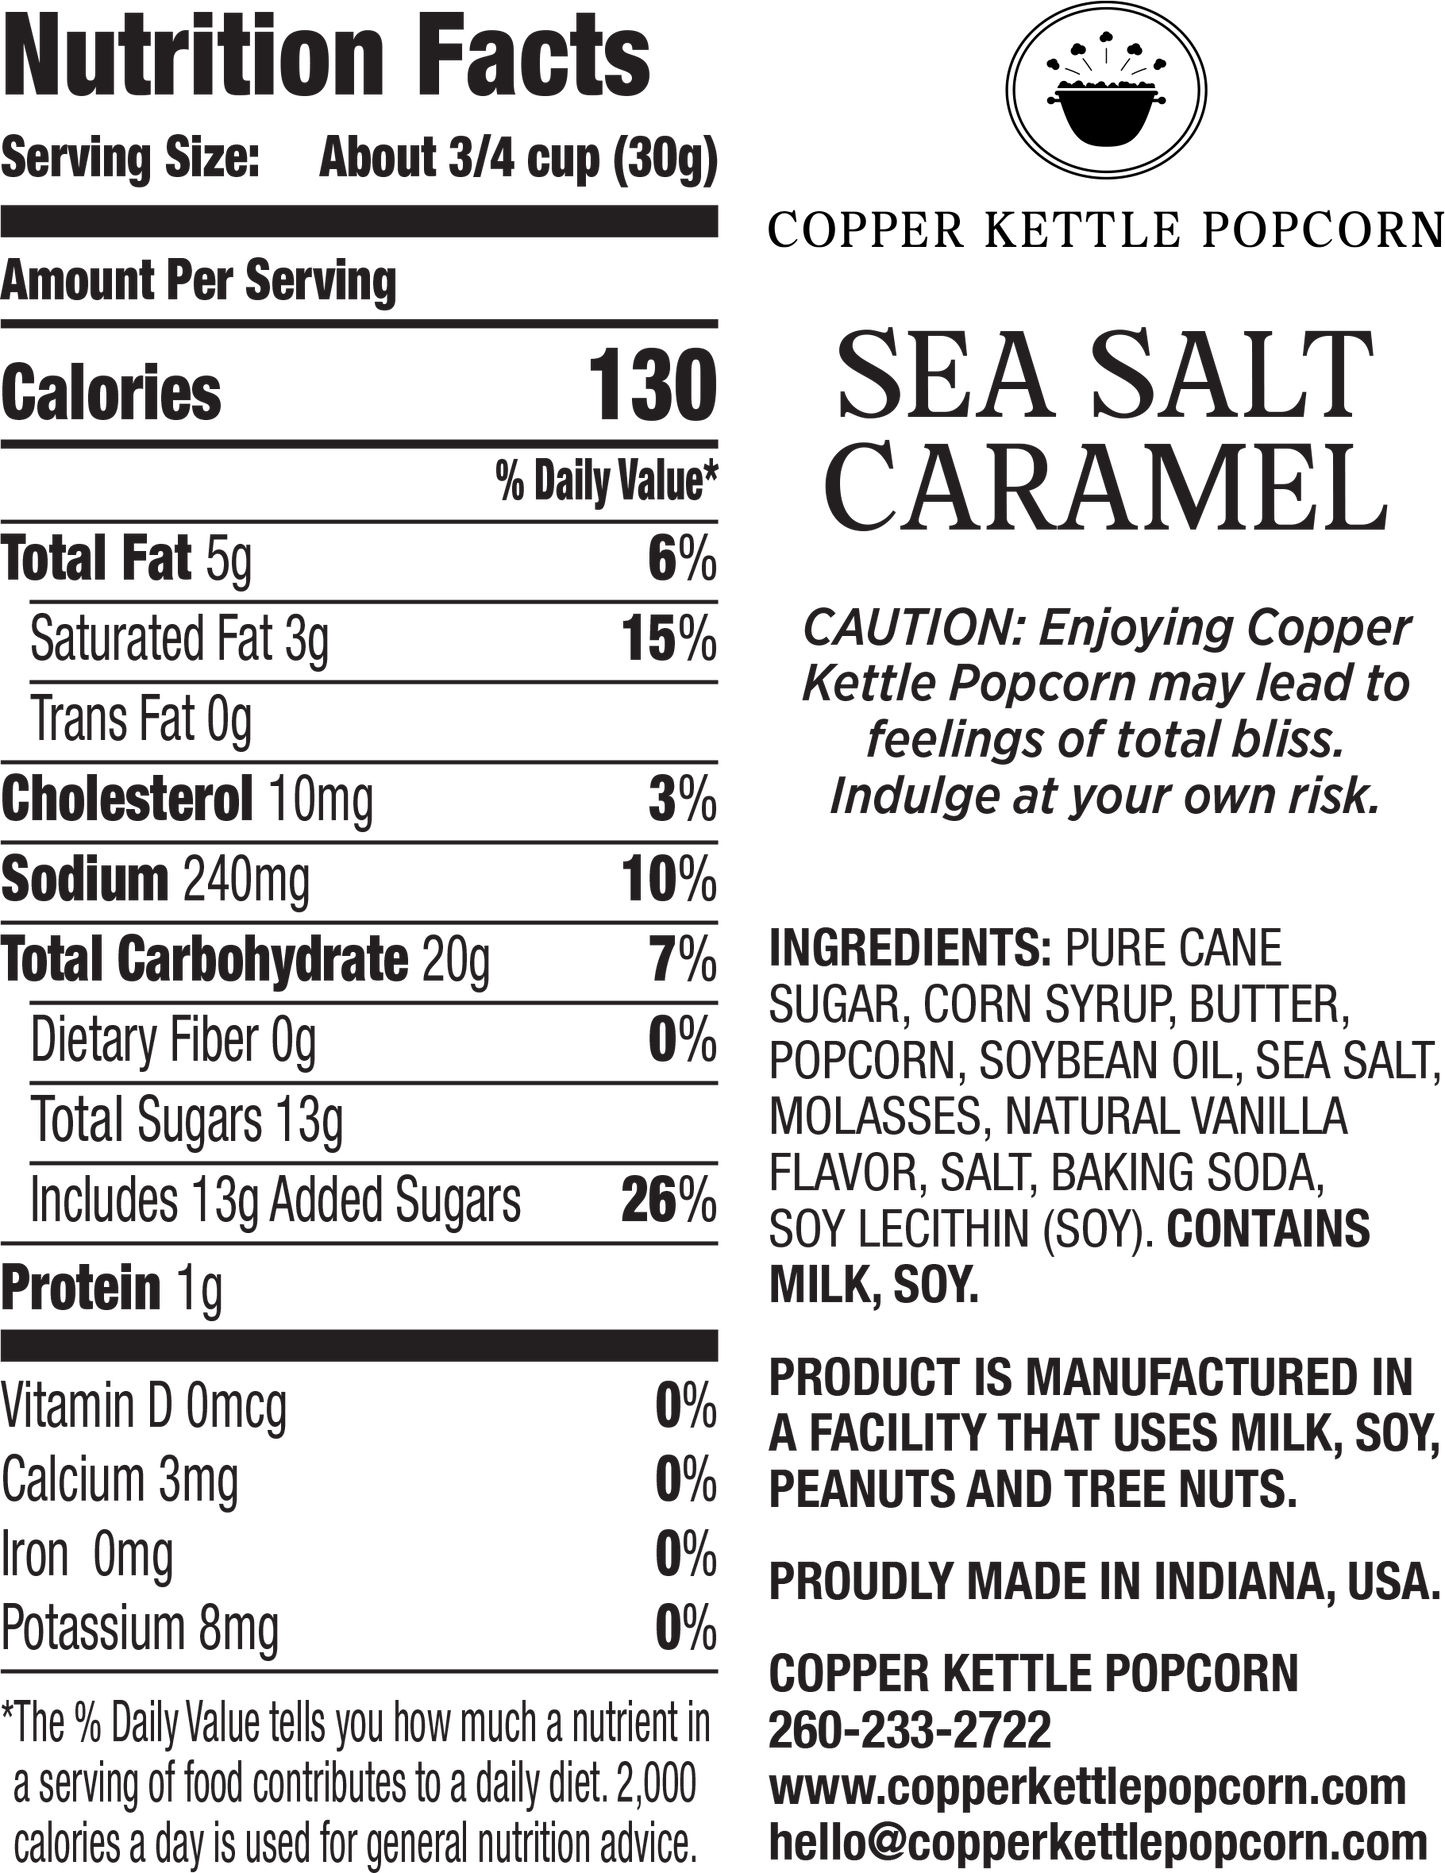 Sea Salt Caramel Canister 12 Serving Nutrition Label